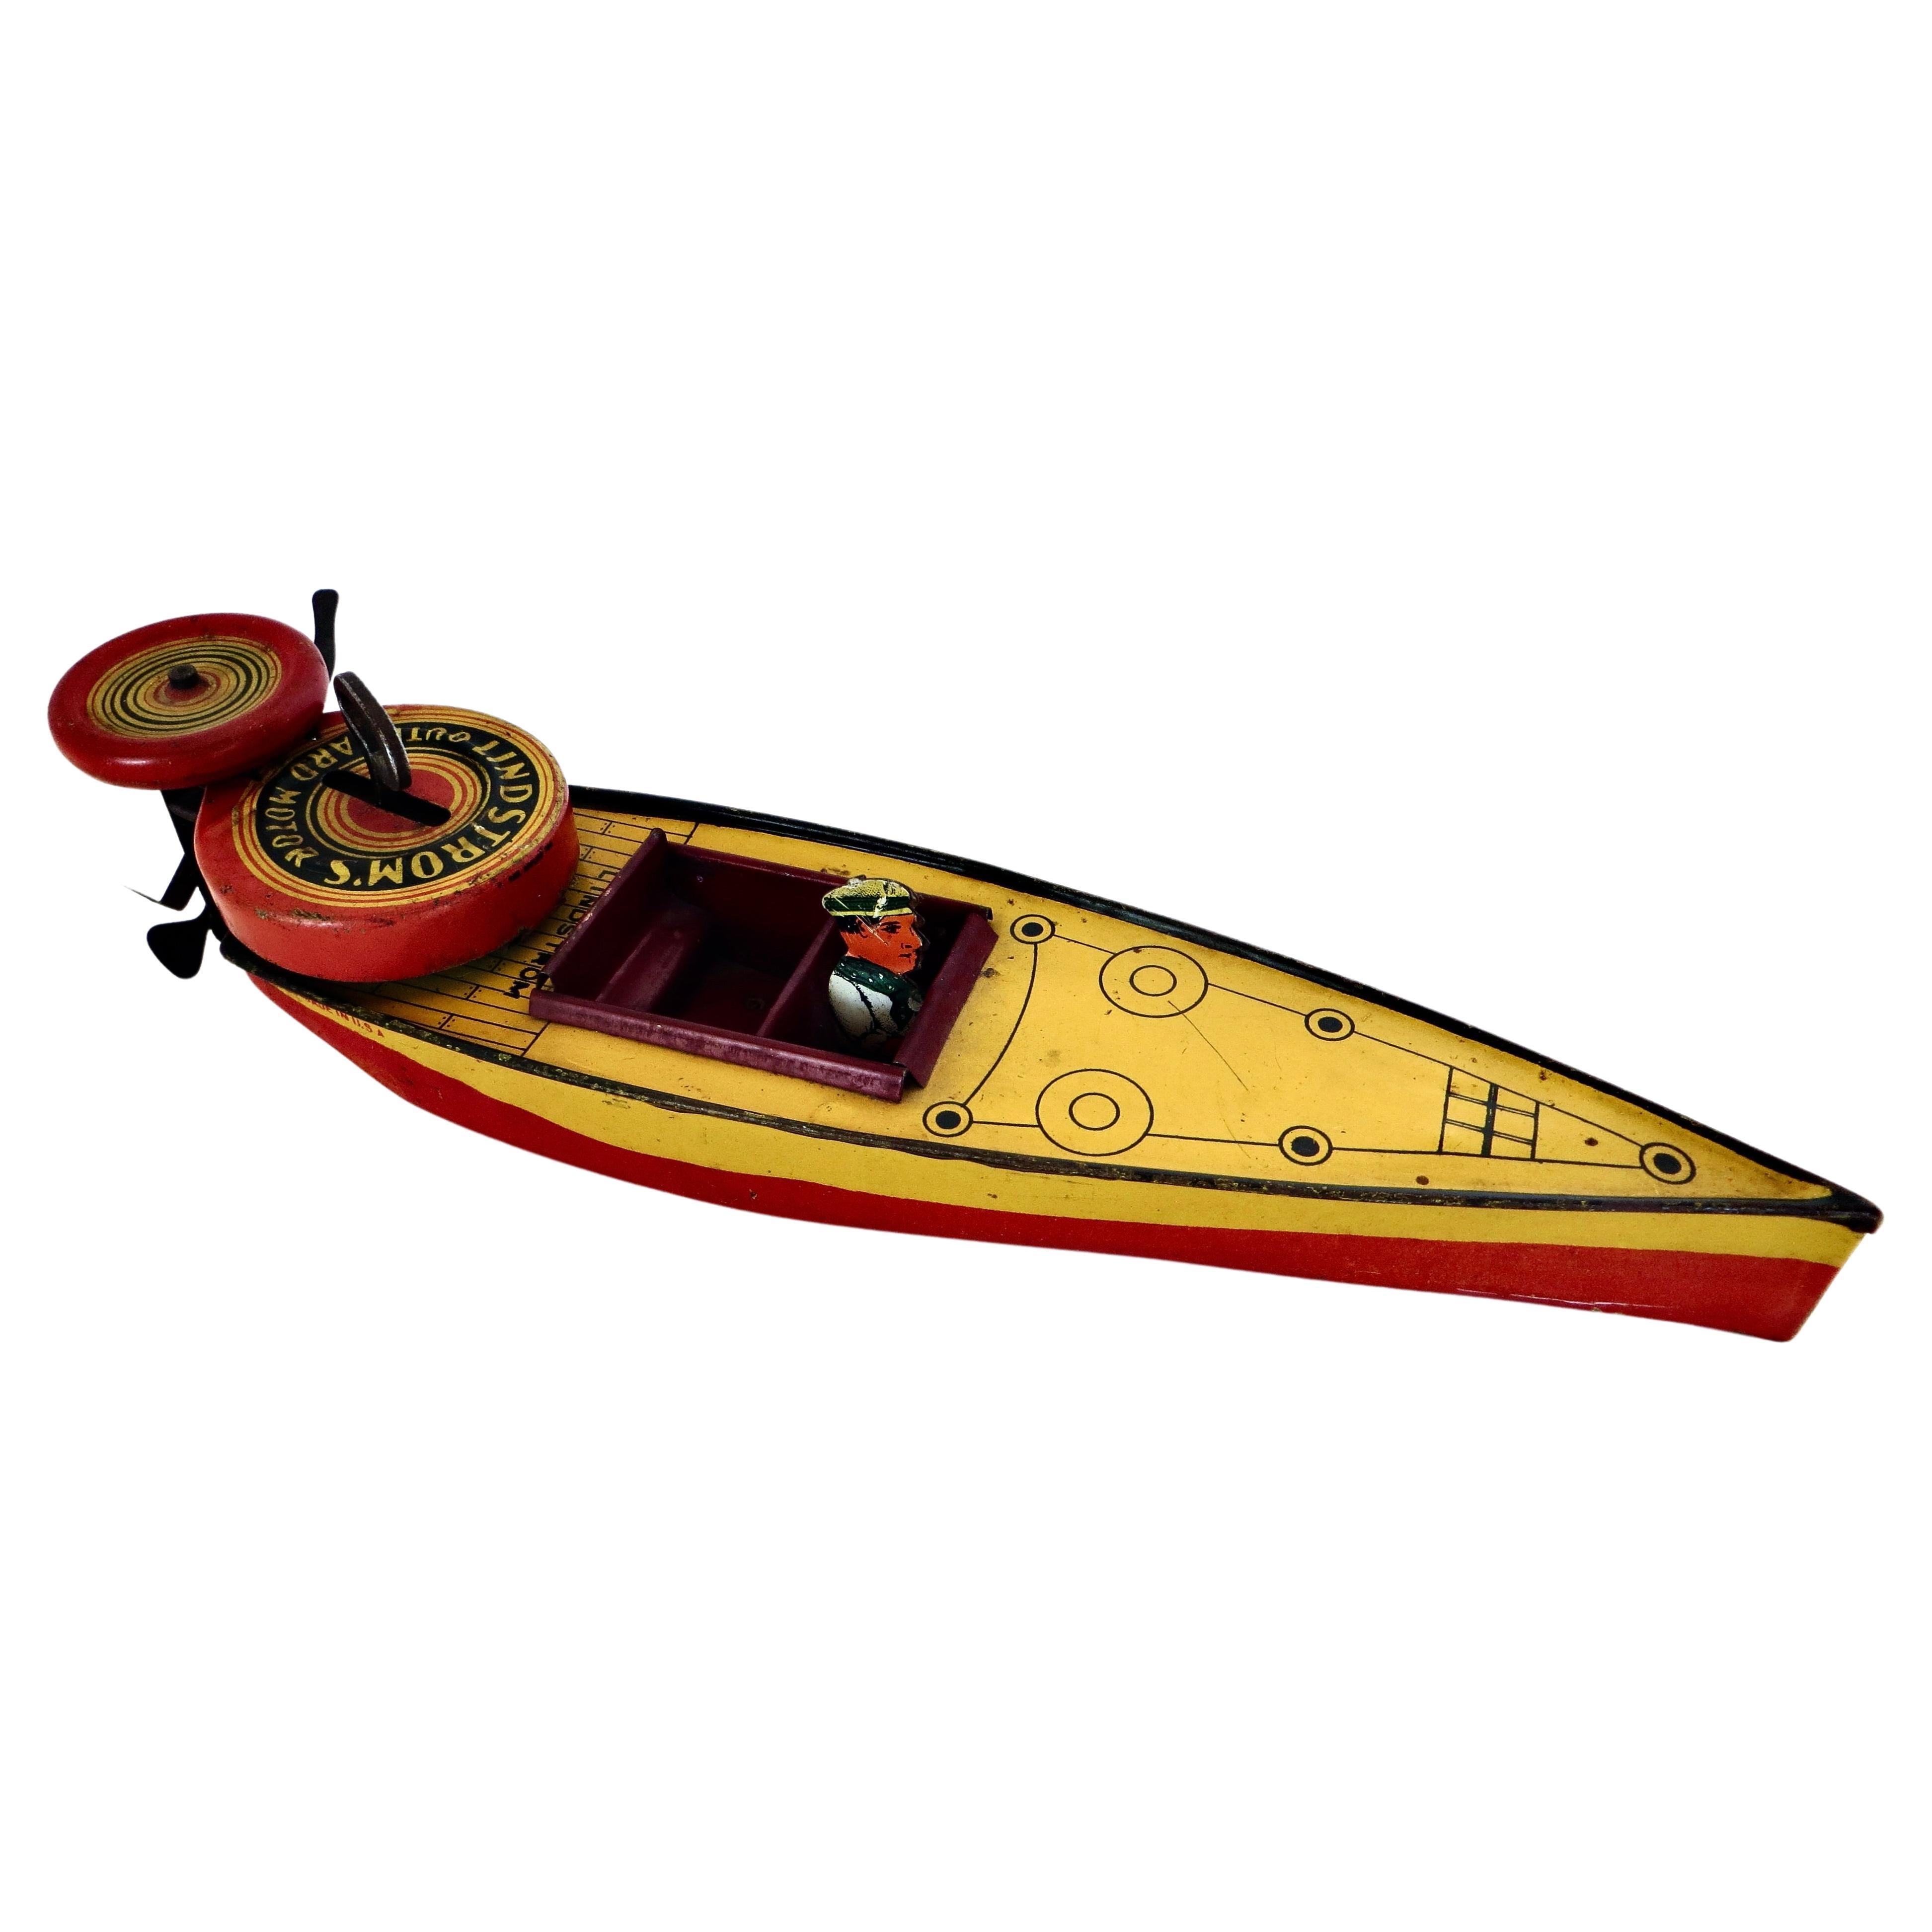 Vintage-Spielzeug- Wind-Up Speed Boat mit Driver von Lindstrom Toy Co., amerikanisch 1933